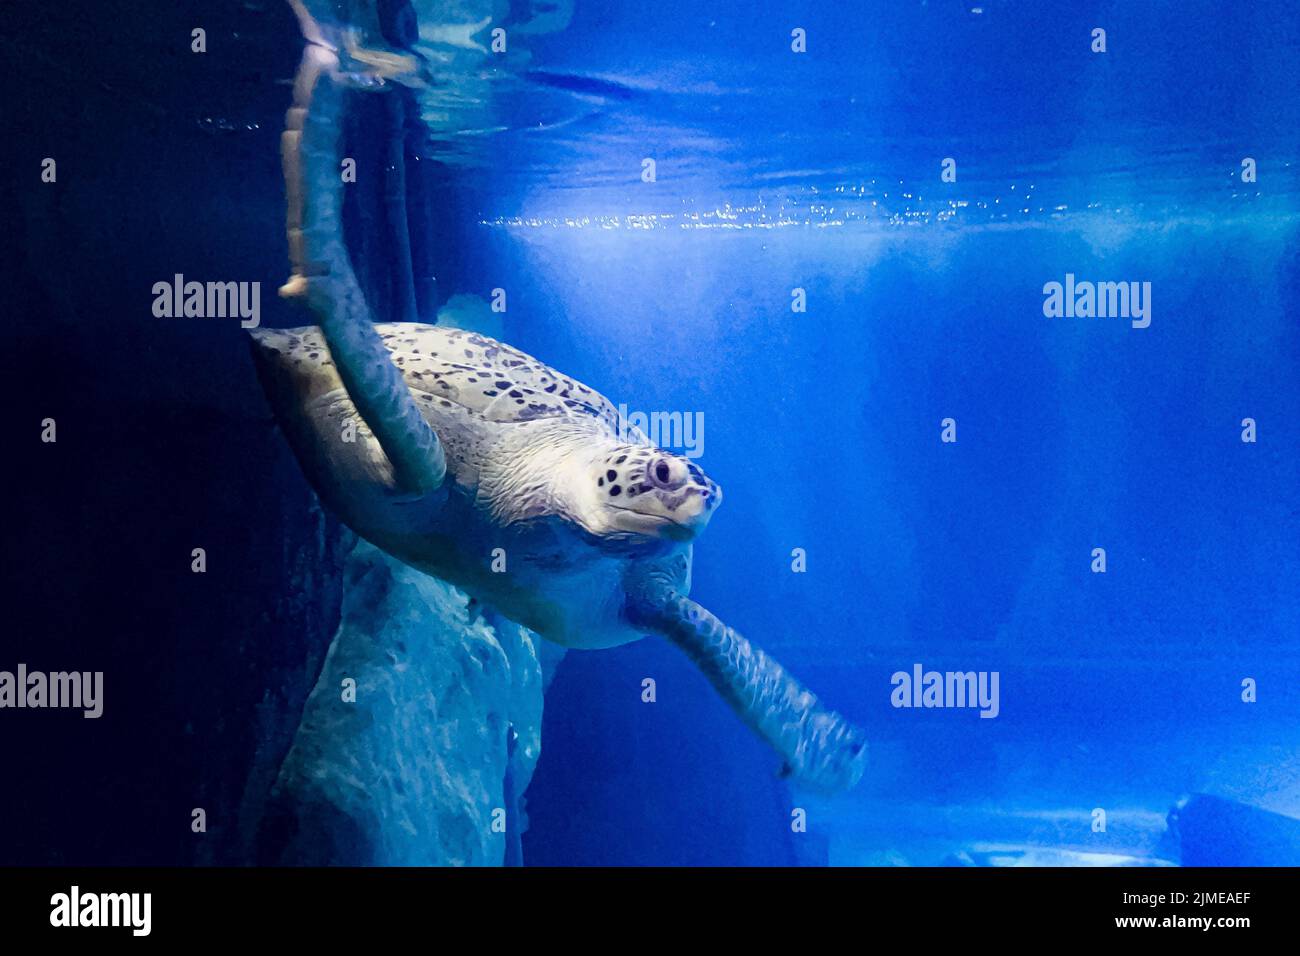 Freitag schwimmt die Grüne Schildkröte im National Marine Aquarium (NMA) in Plymouth an einem neu montierten Käfig im größten und tiefsten Tank Großbritanniens vorbei. Die Ausstellung für den Atlantischen Ozean ermöglicht es den Menschen, die Unterwasserwelt in einem Tank mit 2,5 Millionen Litern Wasser aus nächster Nähe zu betrachten. Bilddatum: Freitag, 5. August 2022. Stockfoto